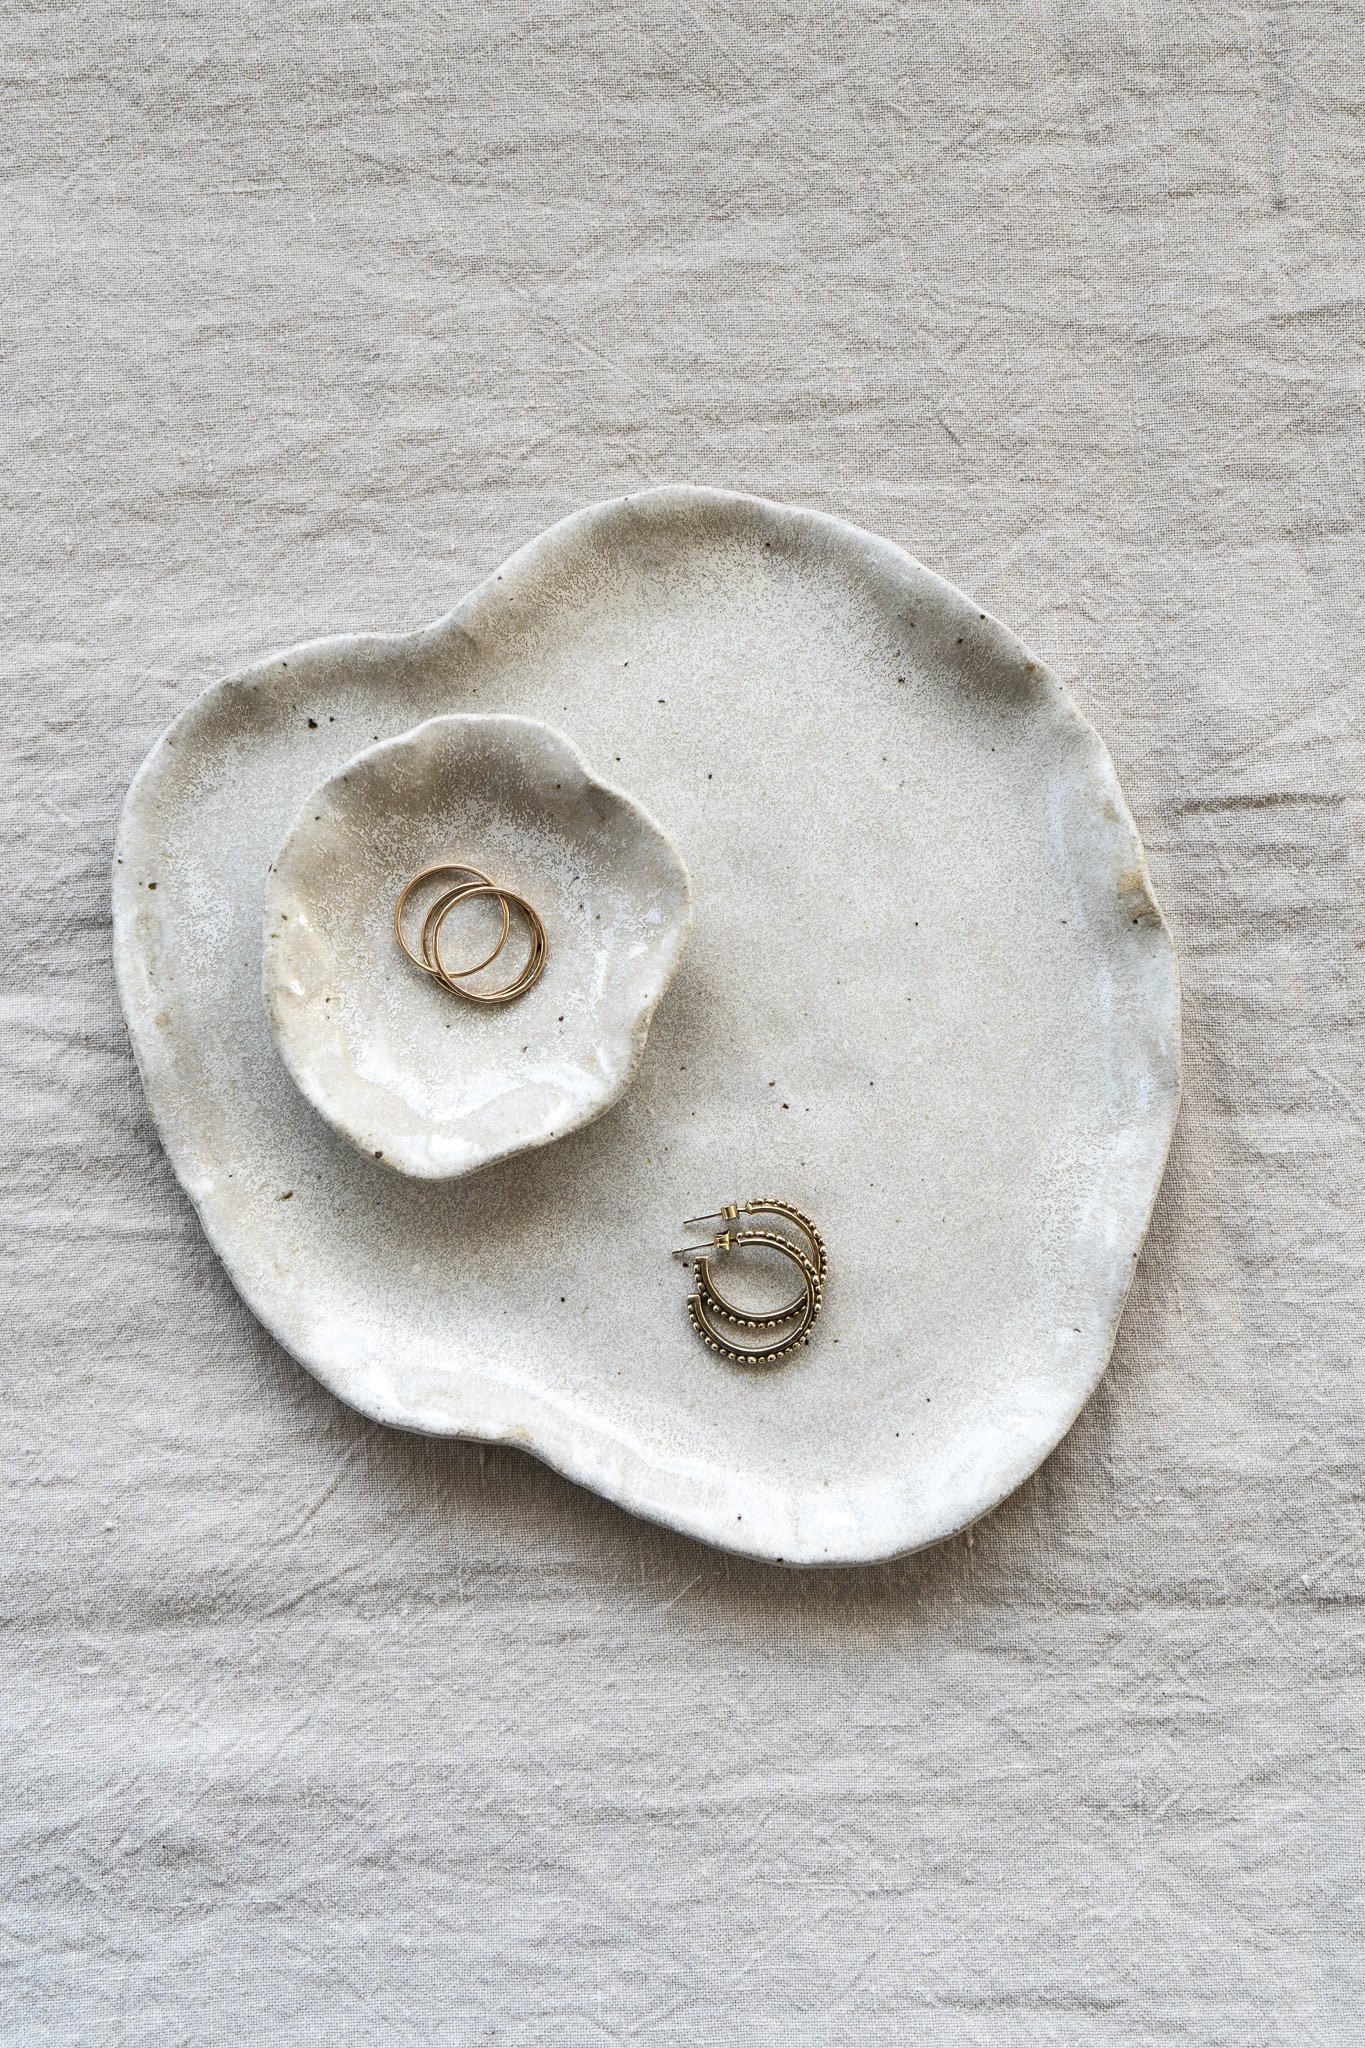 Lily Pad Jewellery Dish in Sea Salt Glaze